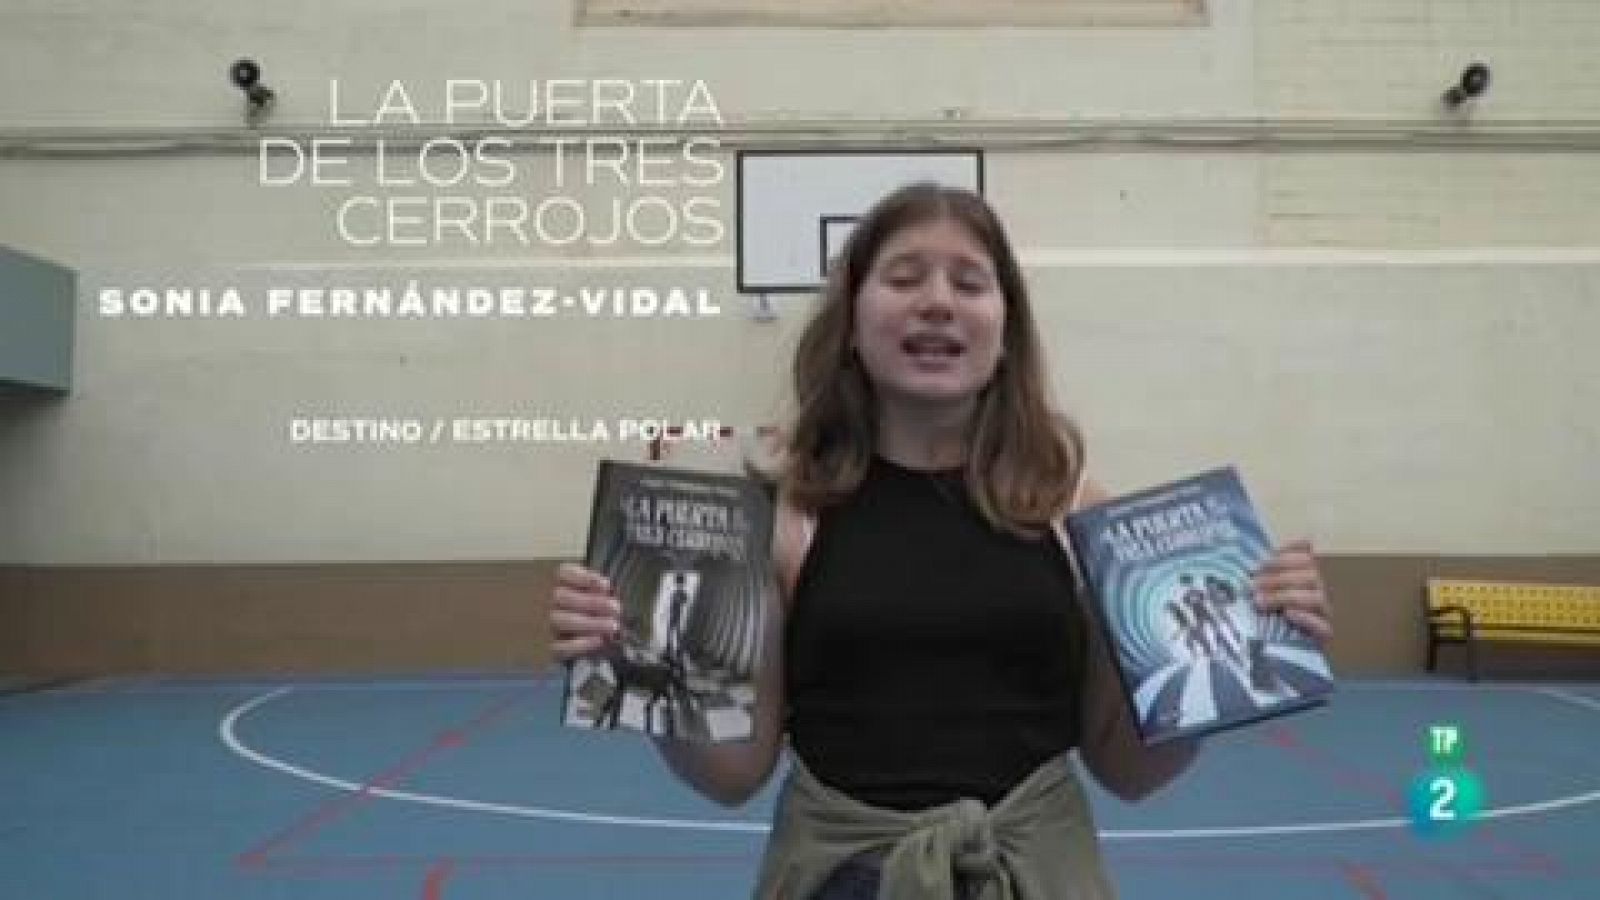 La puerta de los tres cerrojos (Sonia Fernández Vidal